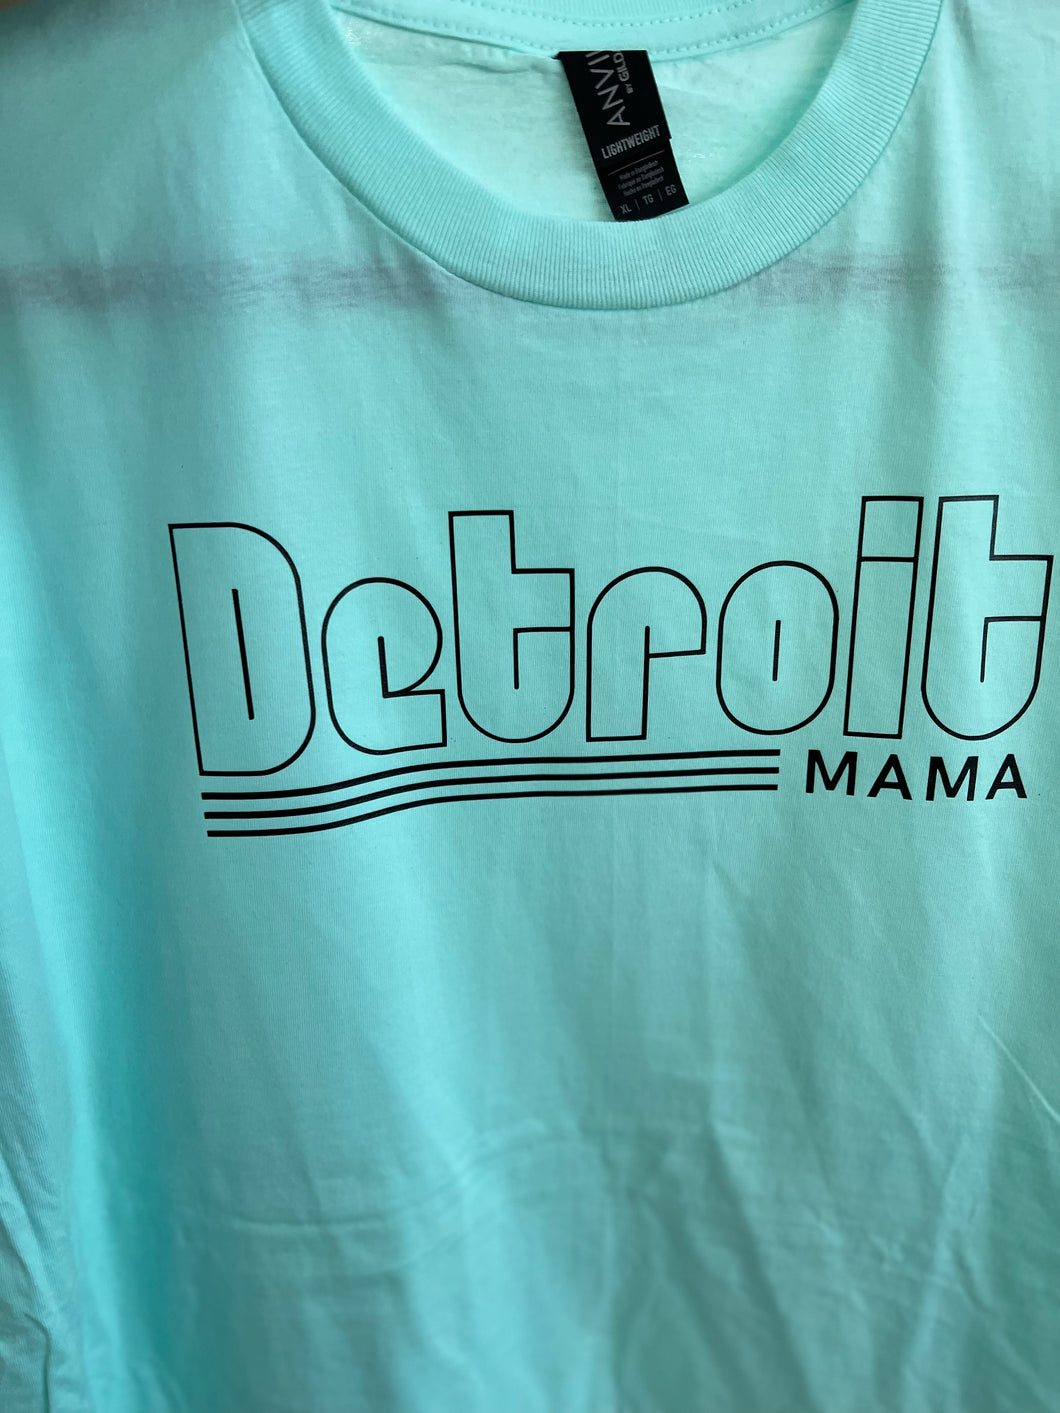 Detroit Mama TShirt